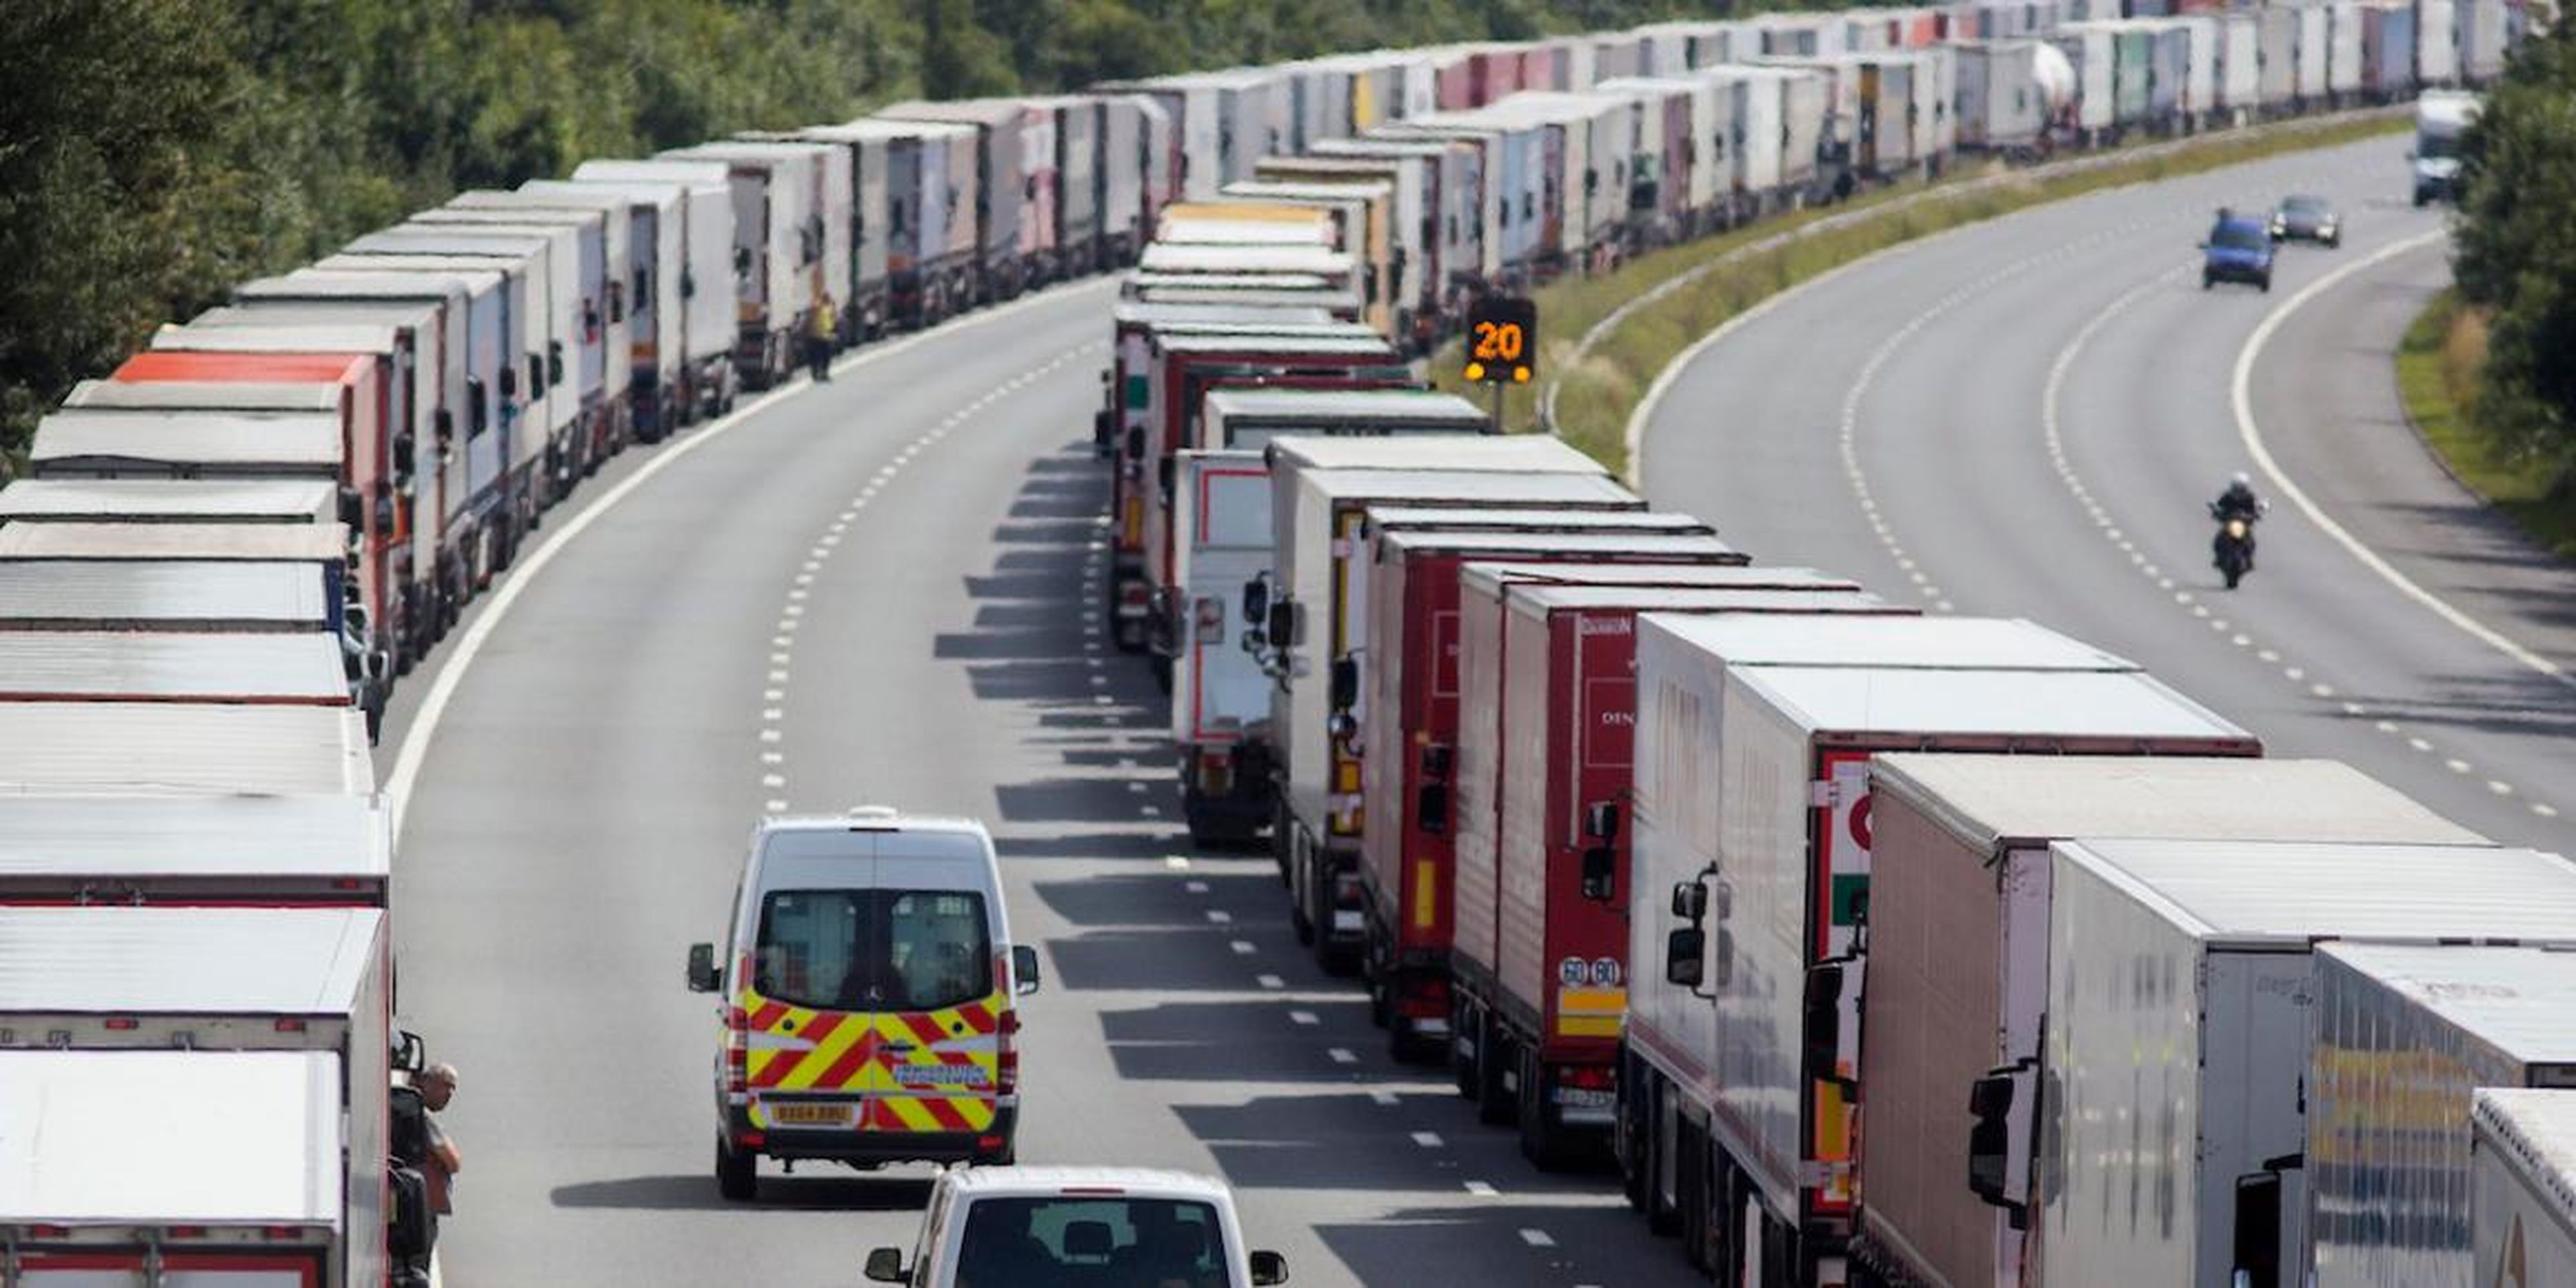 Vehículos extranjeros aparcados en una autopista británica